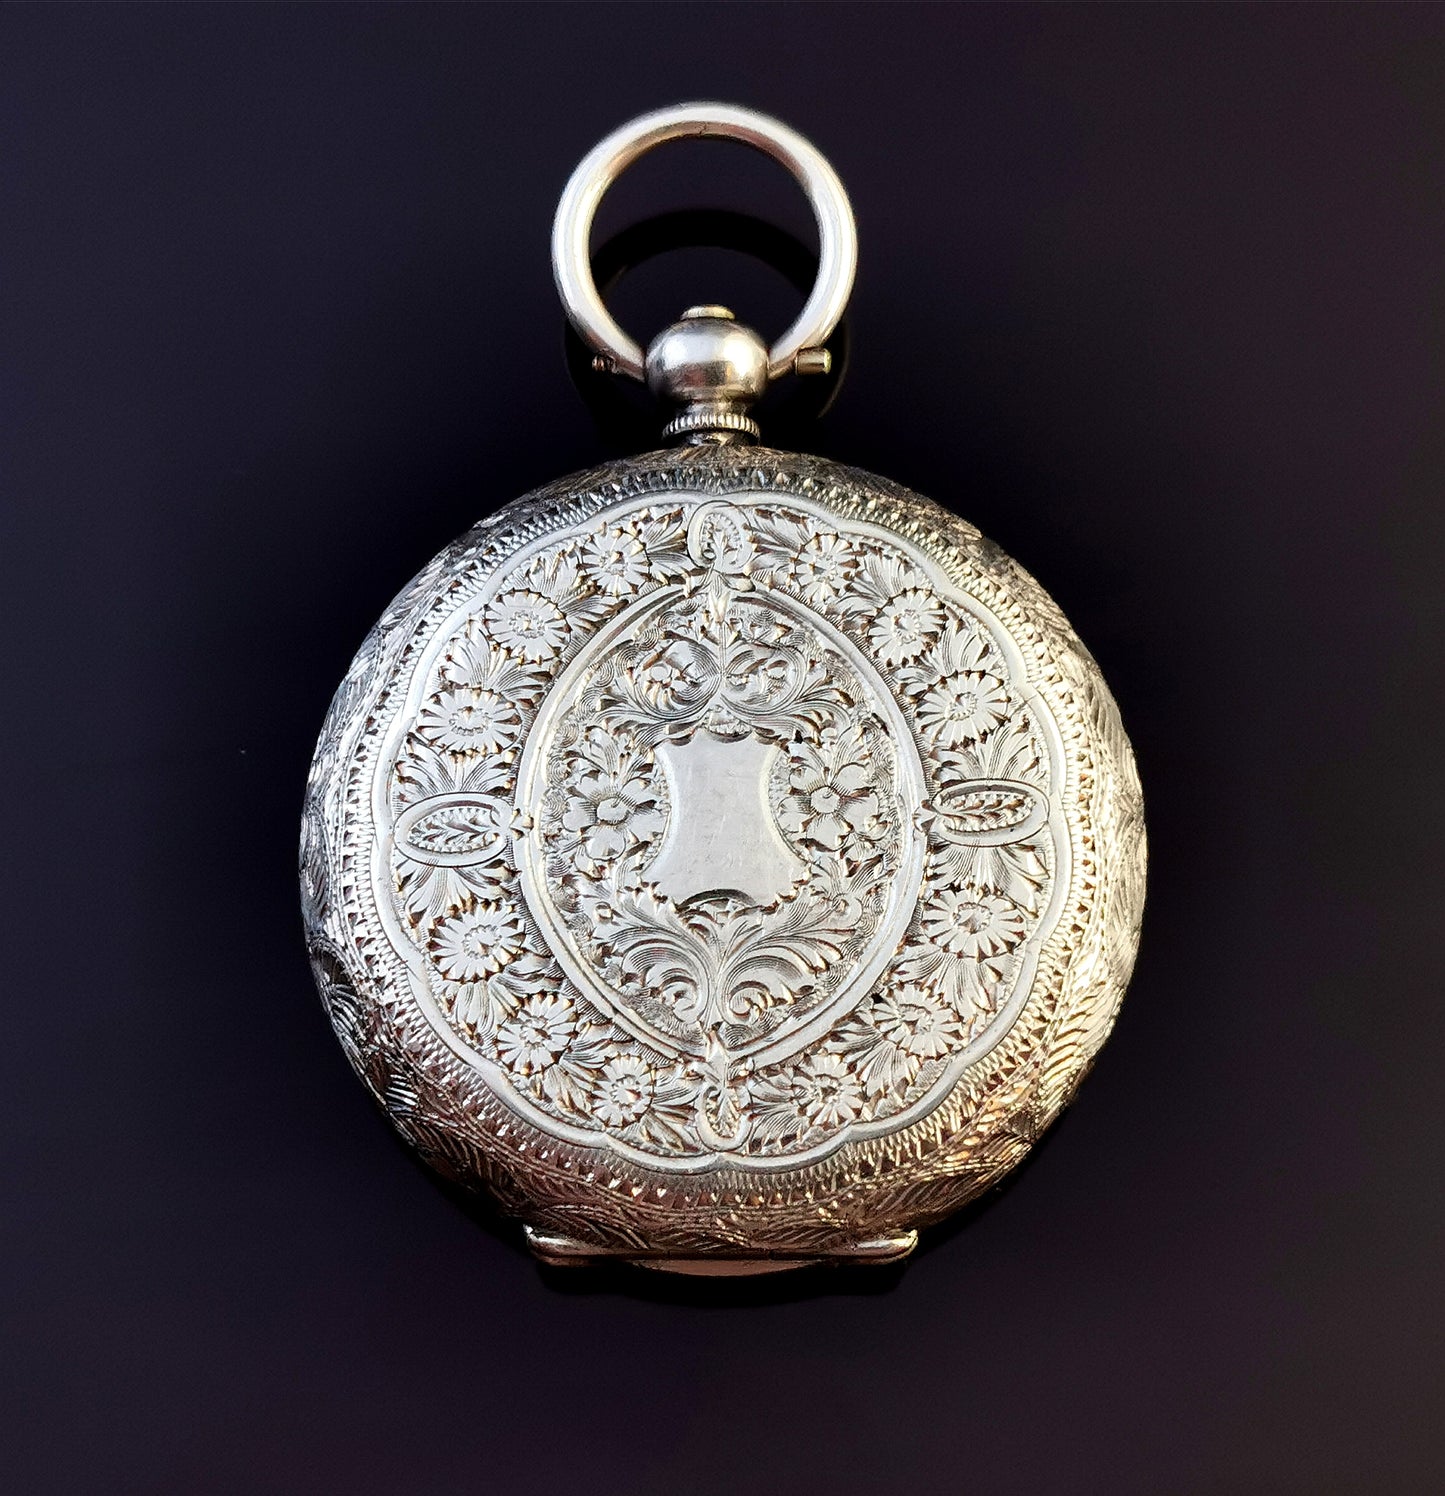 Antique fine silver pocket watch, ladies fob watch